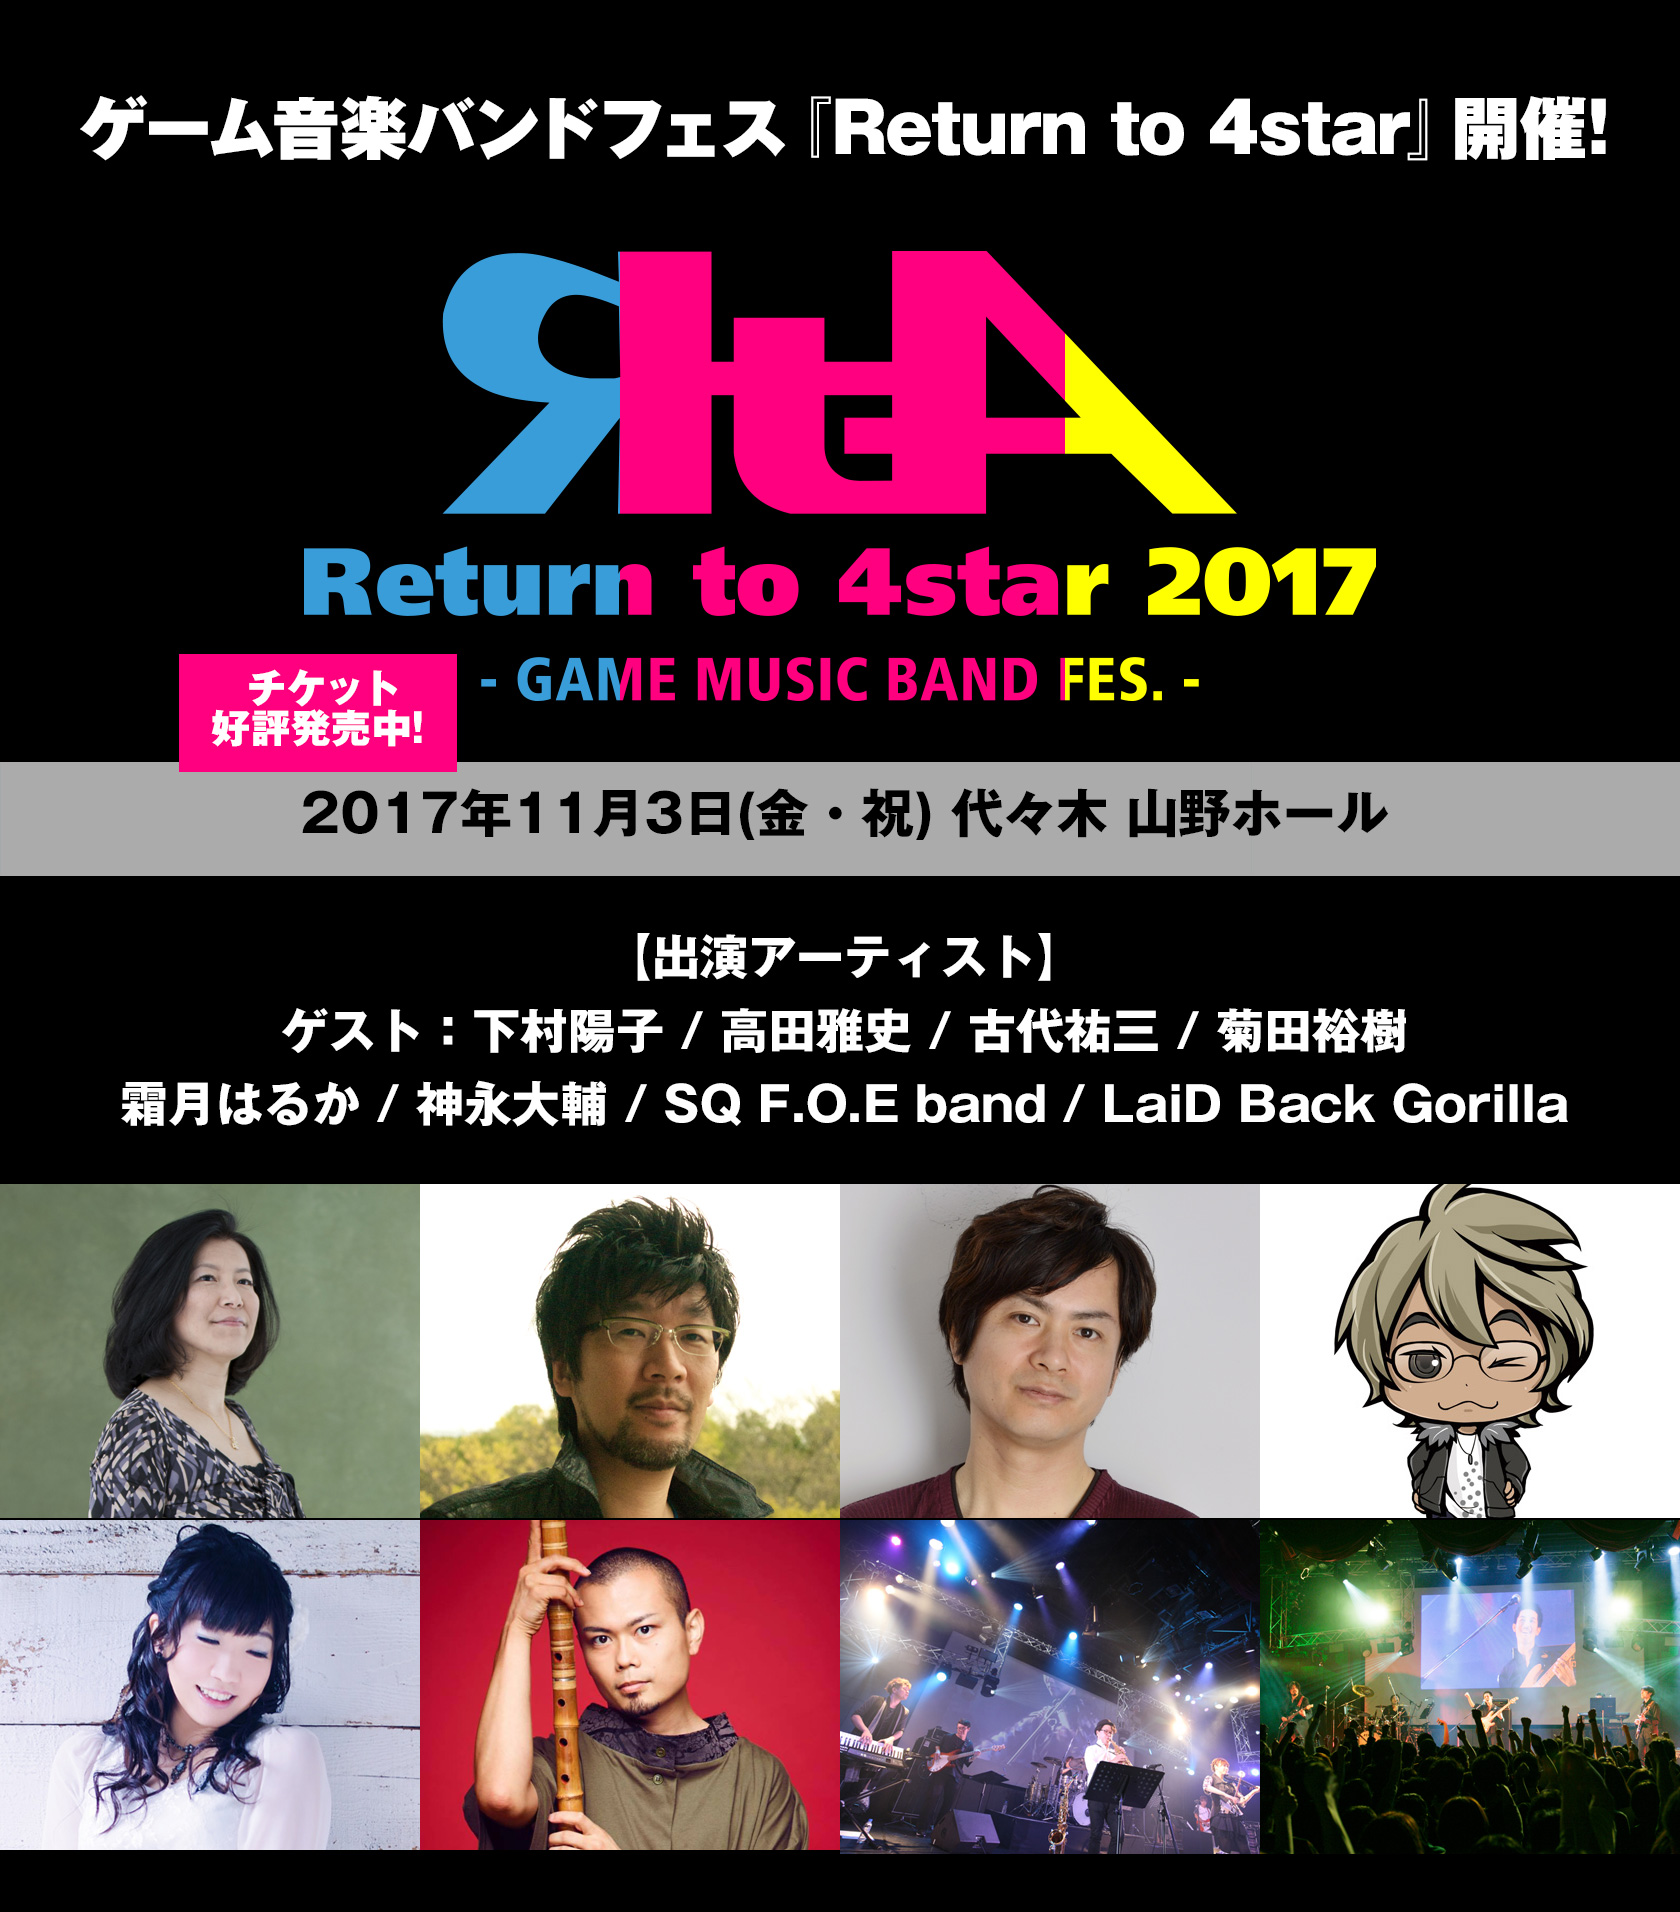 2017年11月3日(金・祝)『Return to 4star 2017 - GAME MUSIC BAND FES. -』開催